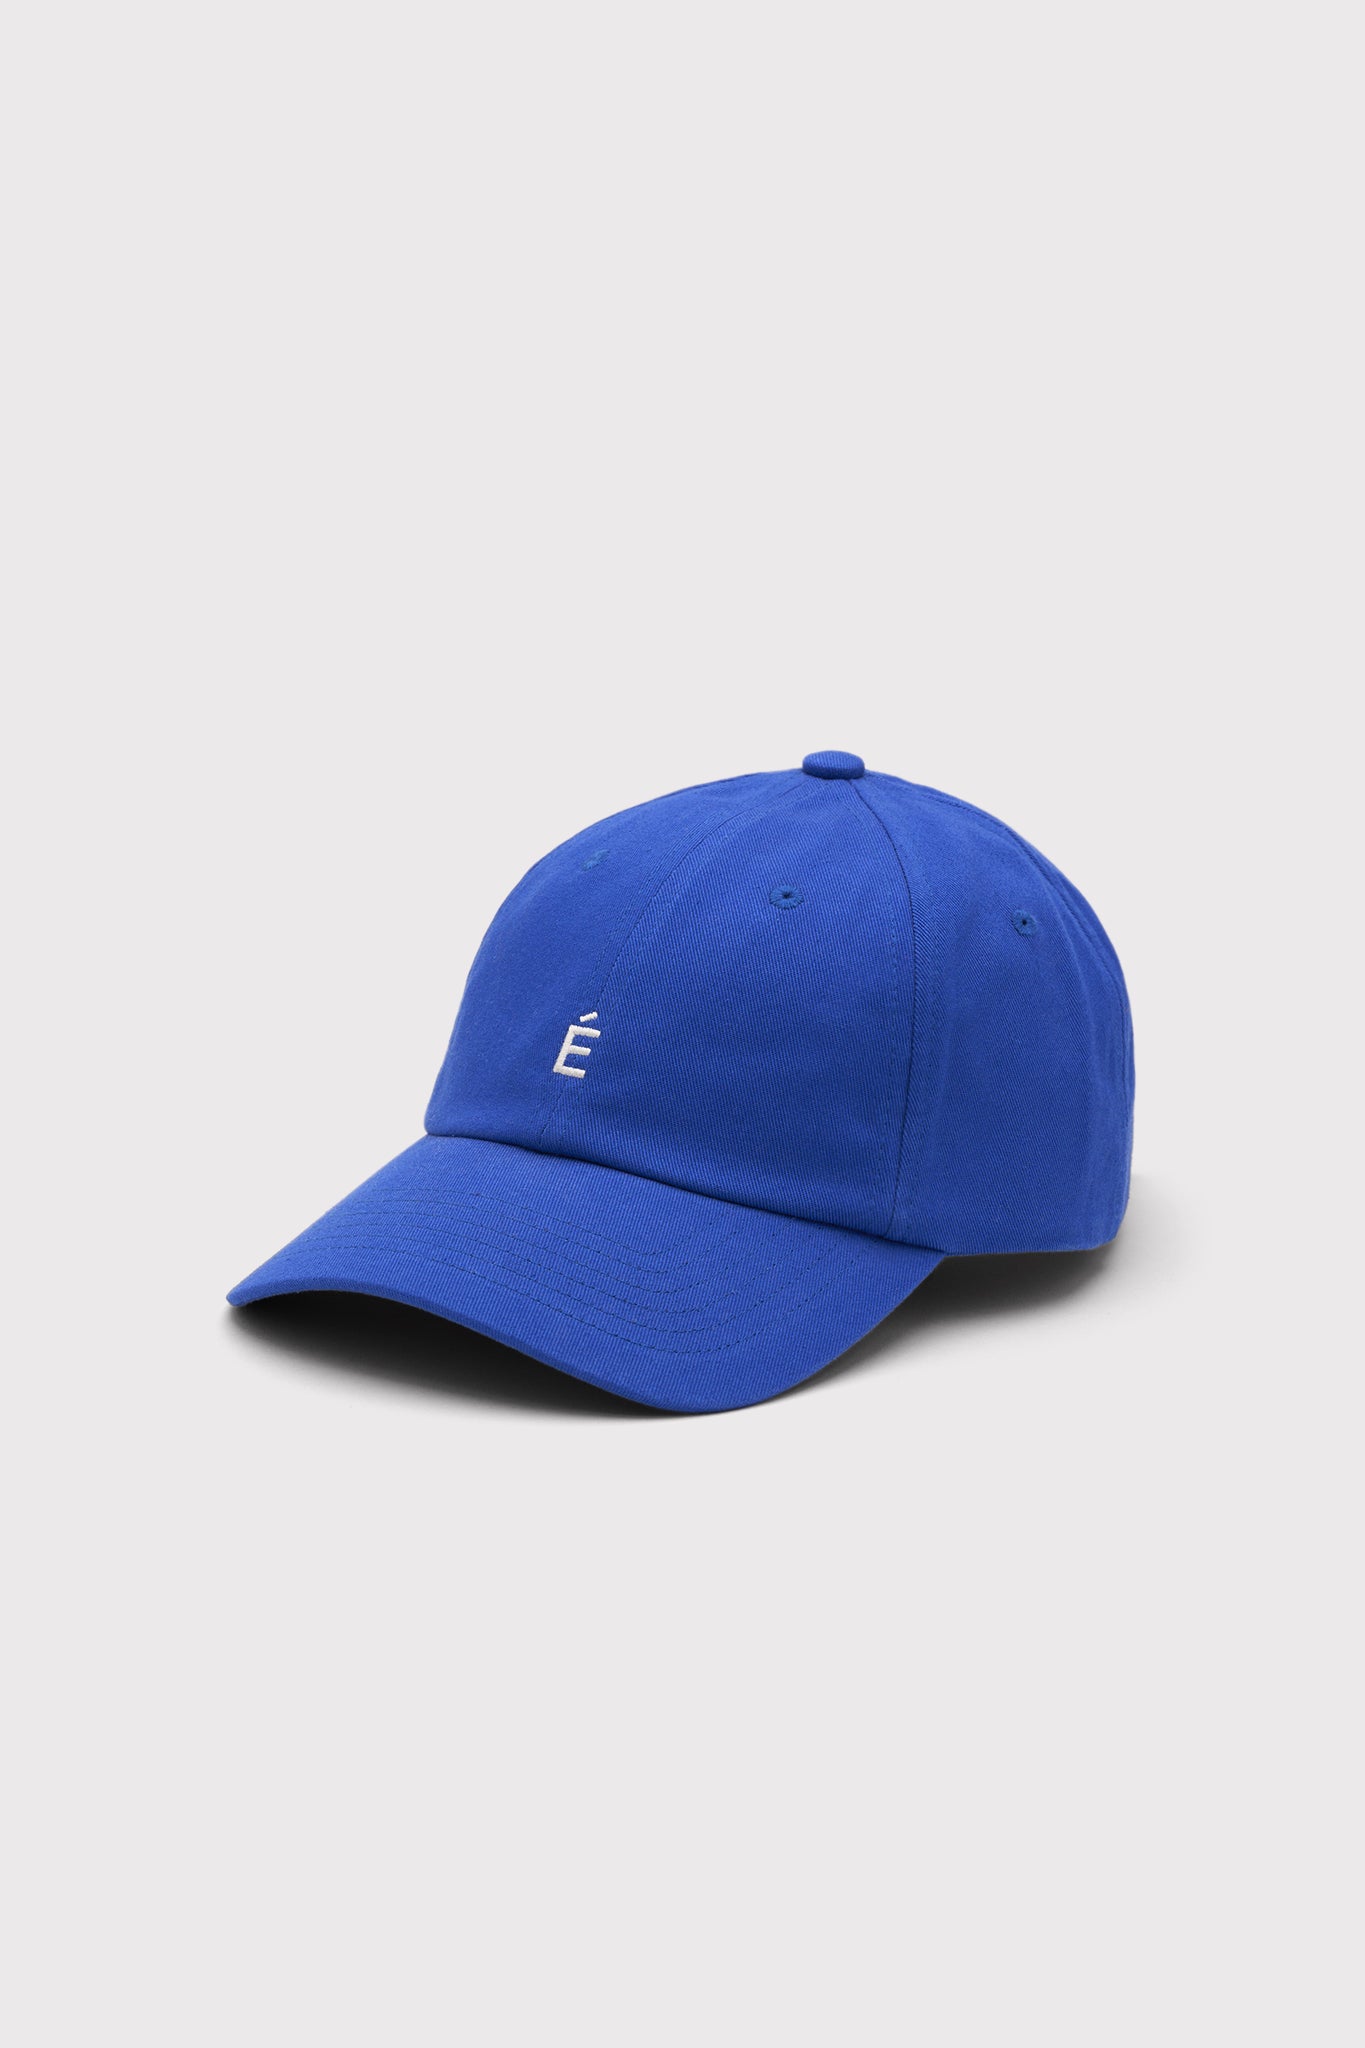 ÉTUDES BOOSTER ACCENT BLUE HAT 1